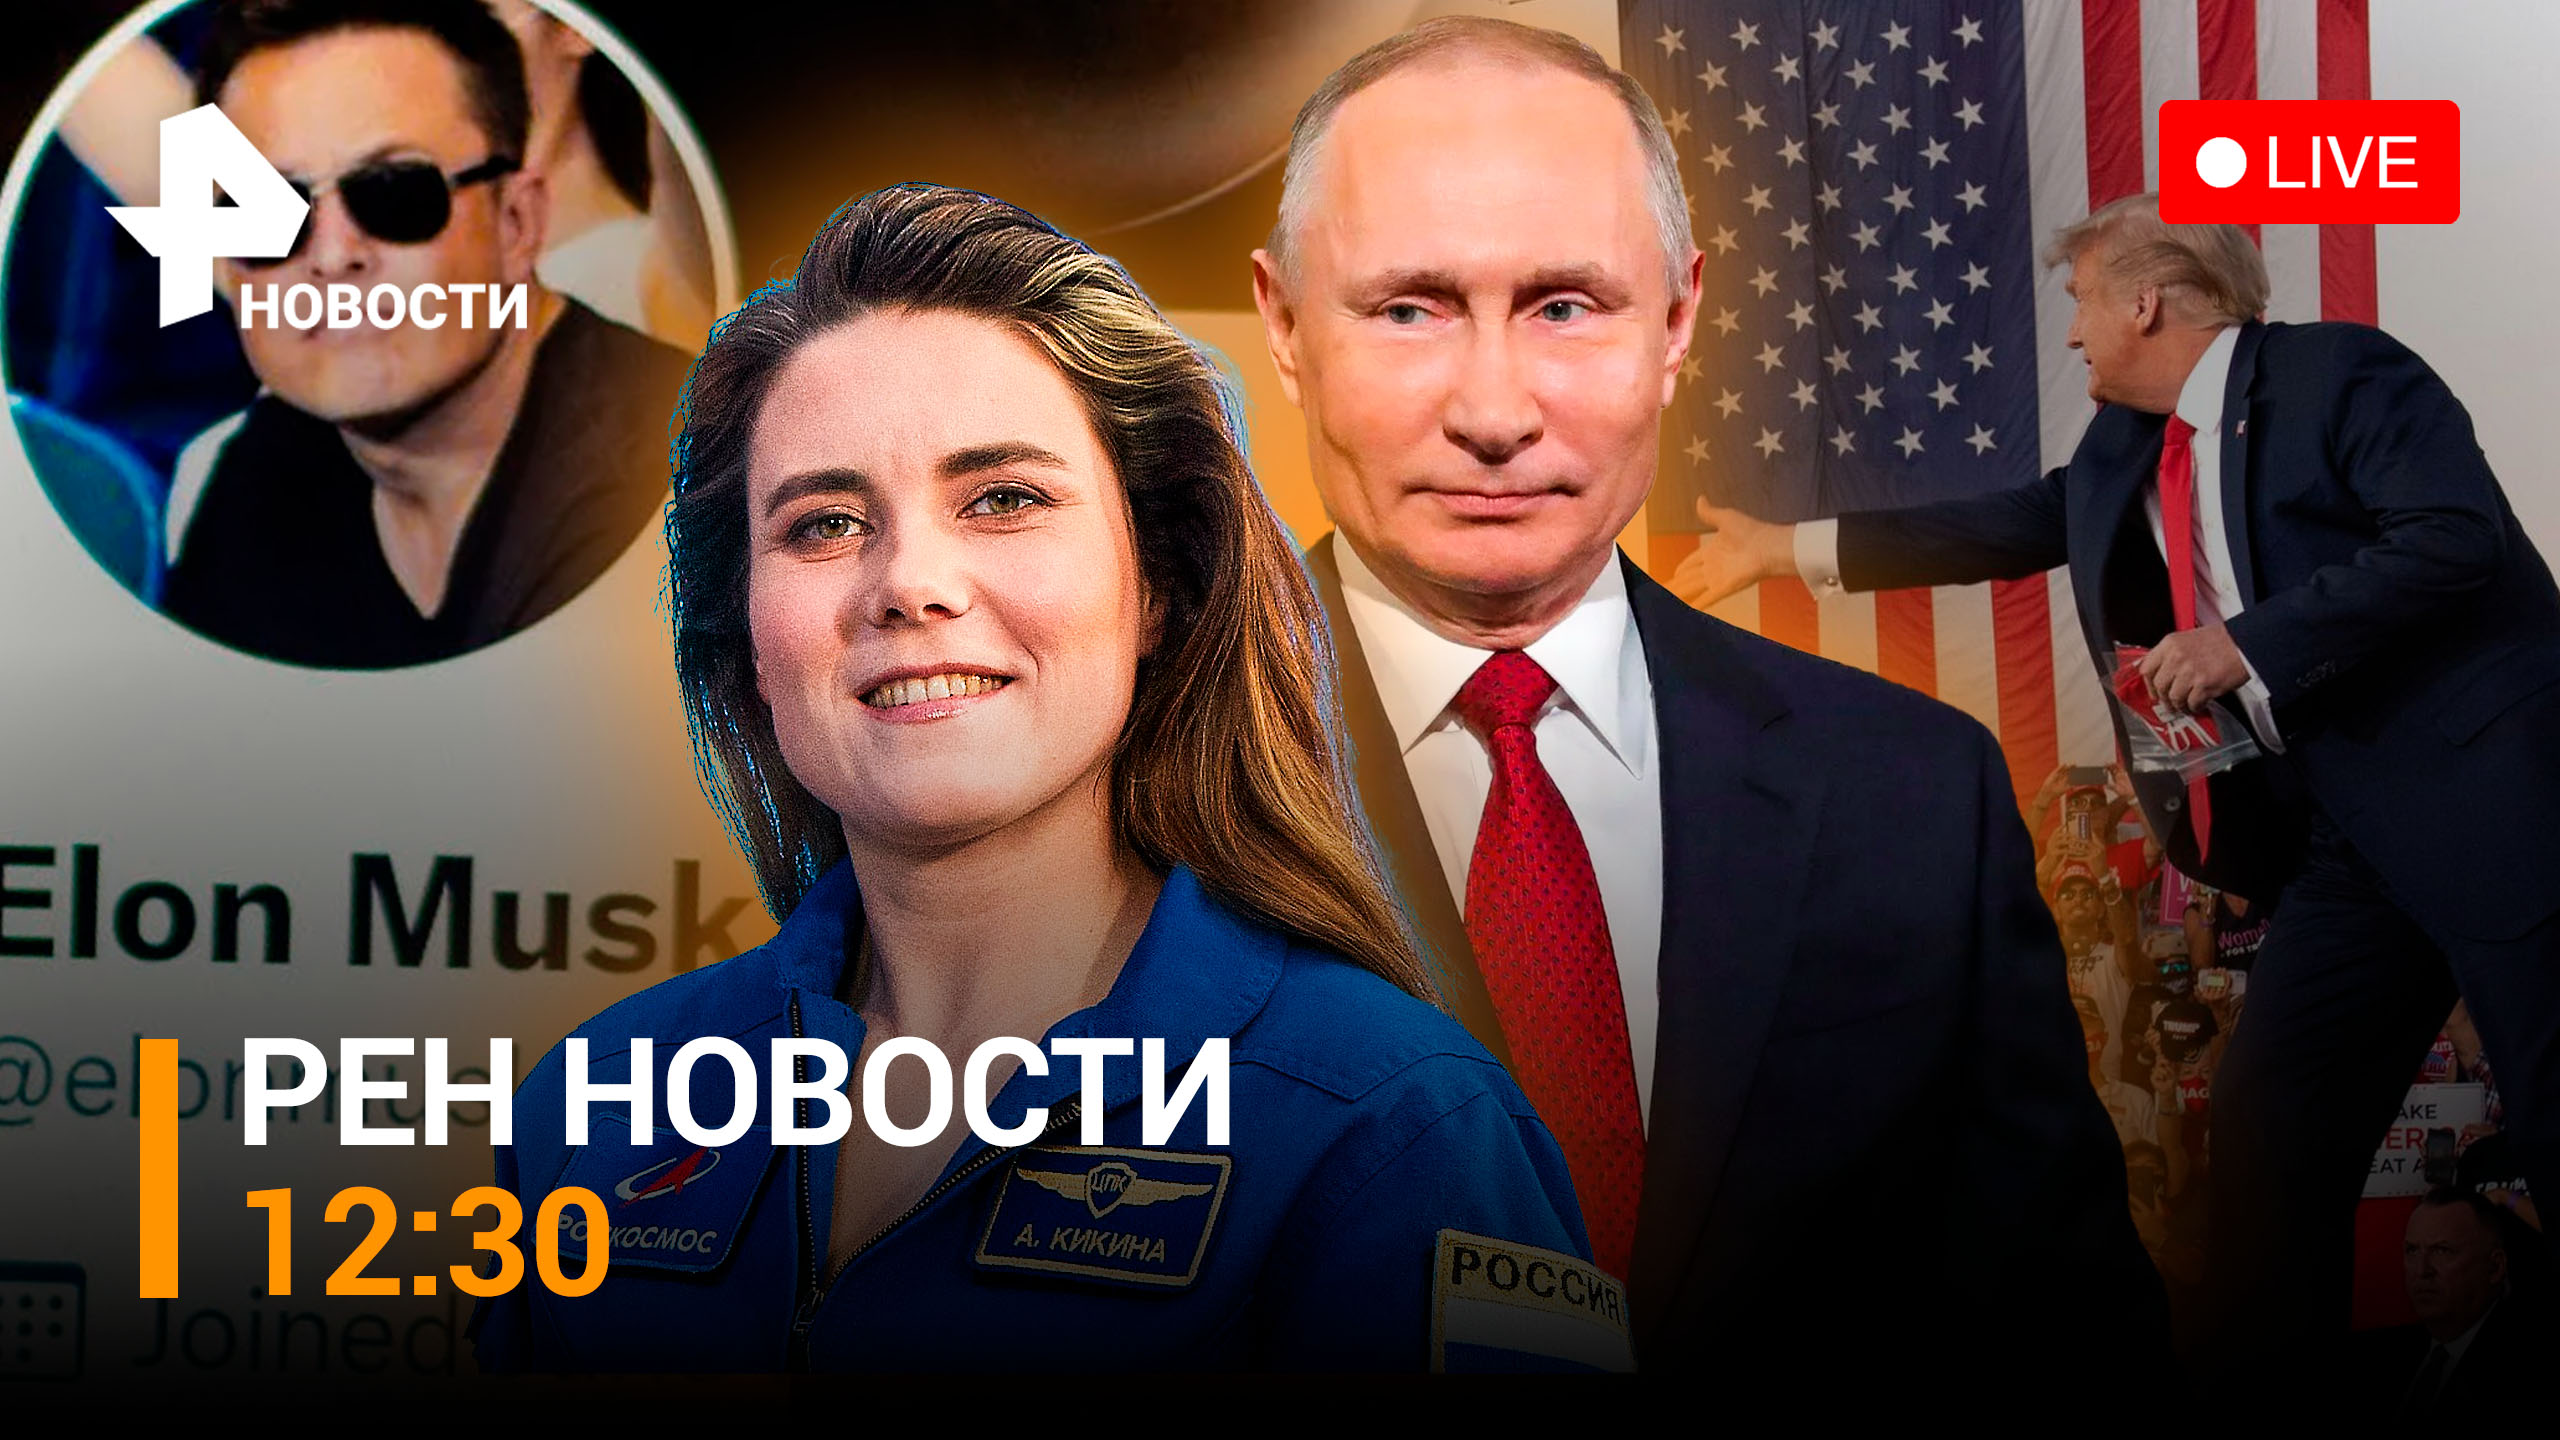 День Народного единства отметили в космосе. Россия празднует с размахом / РЕН НОВОСТИ 12:30